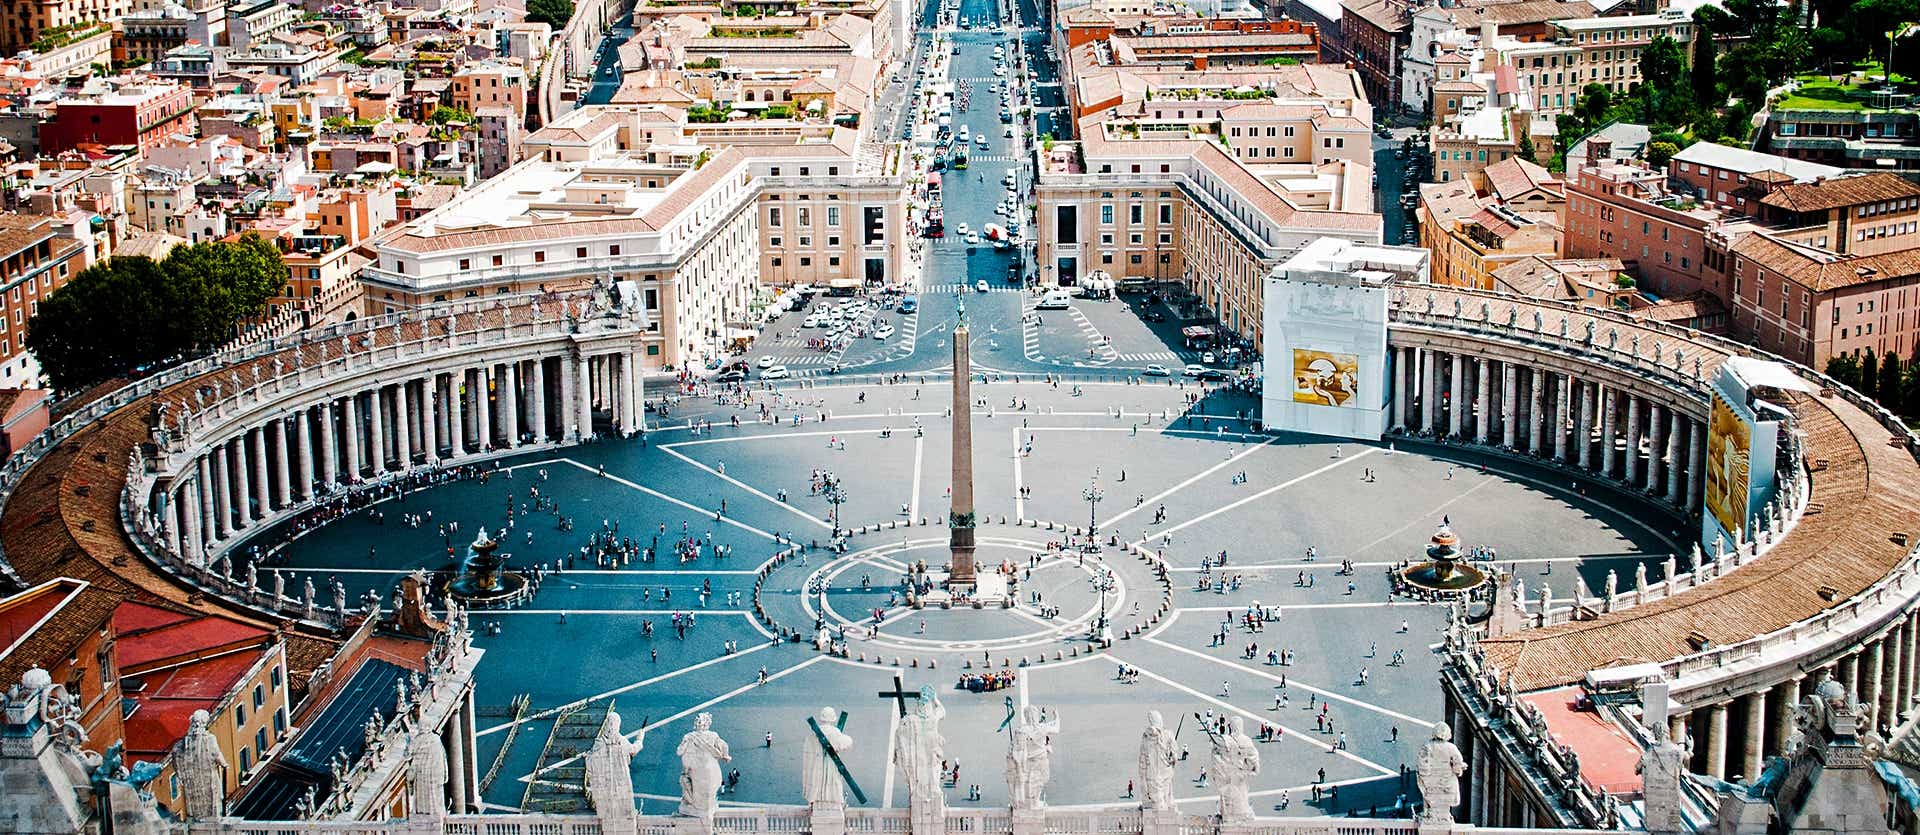 Ciudad del Vaticano <span class="iconos separador"></span> Roma <span class="iconos separador"></span> Italia